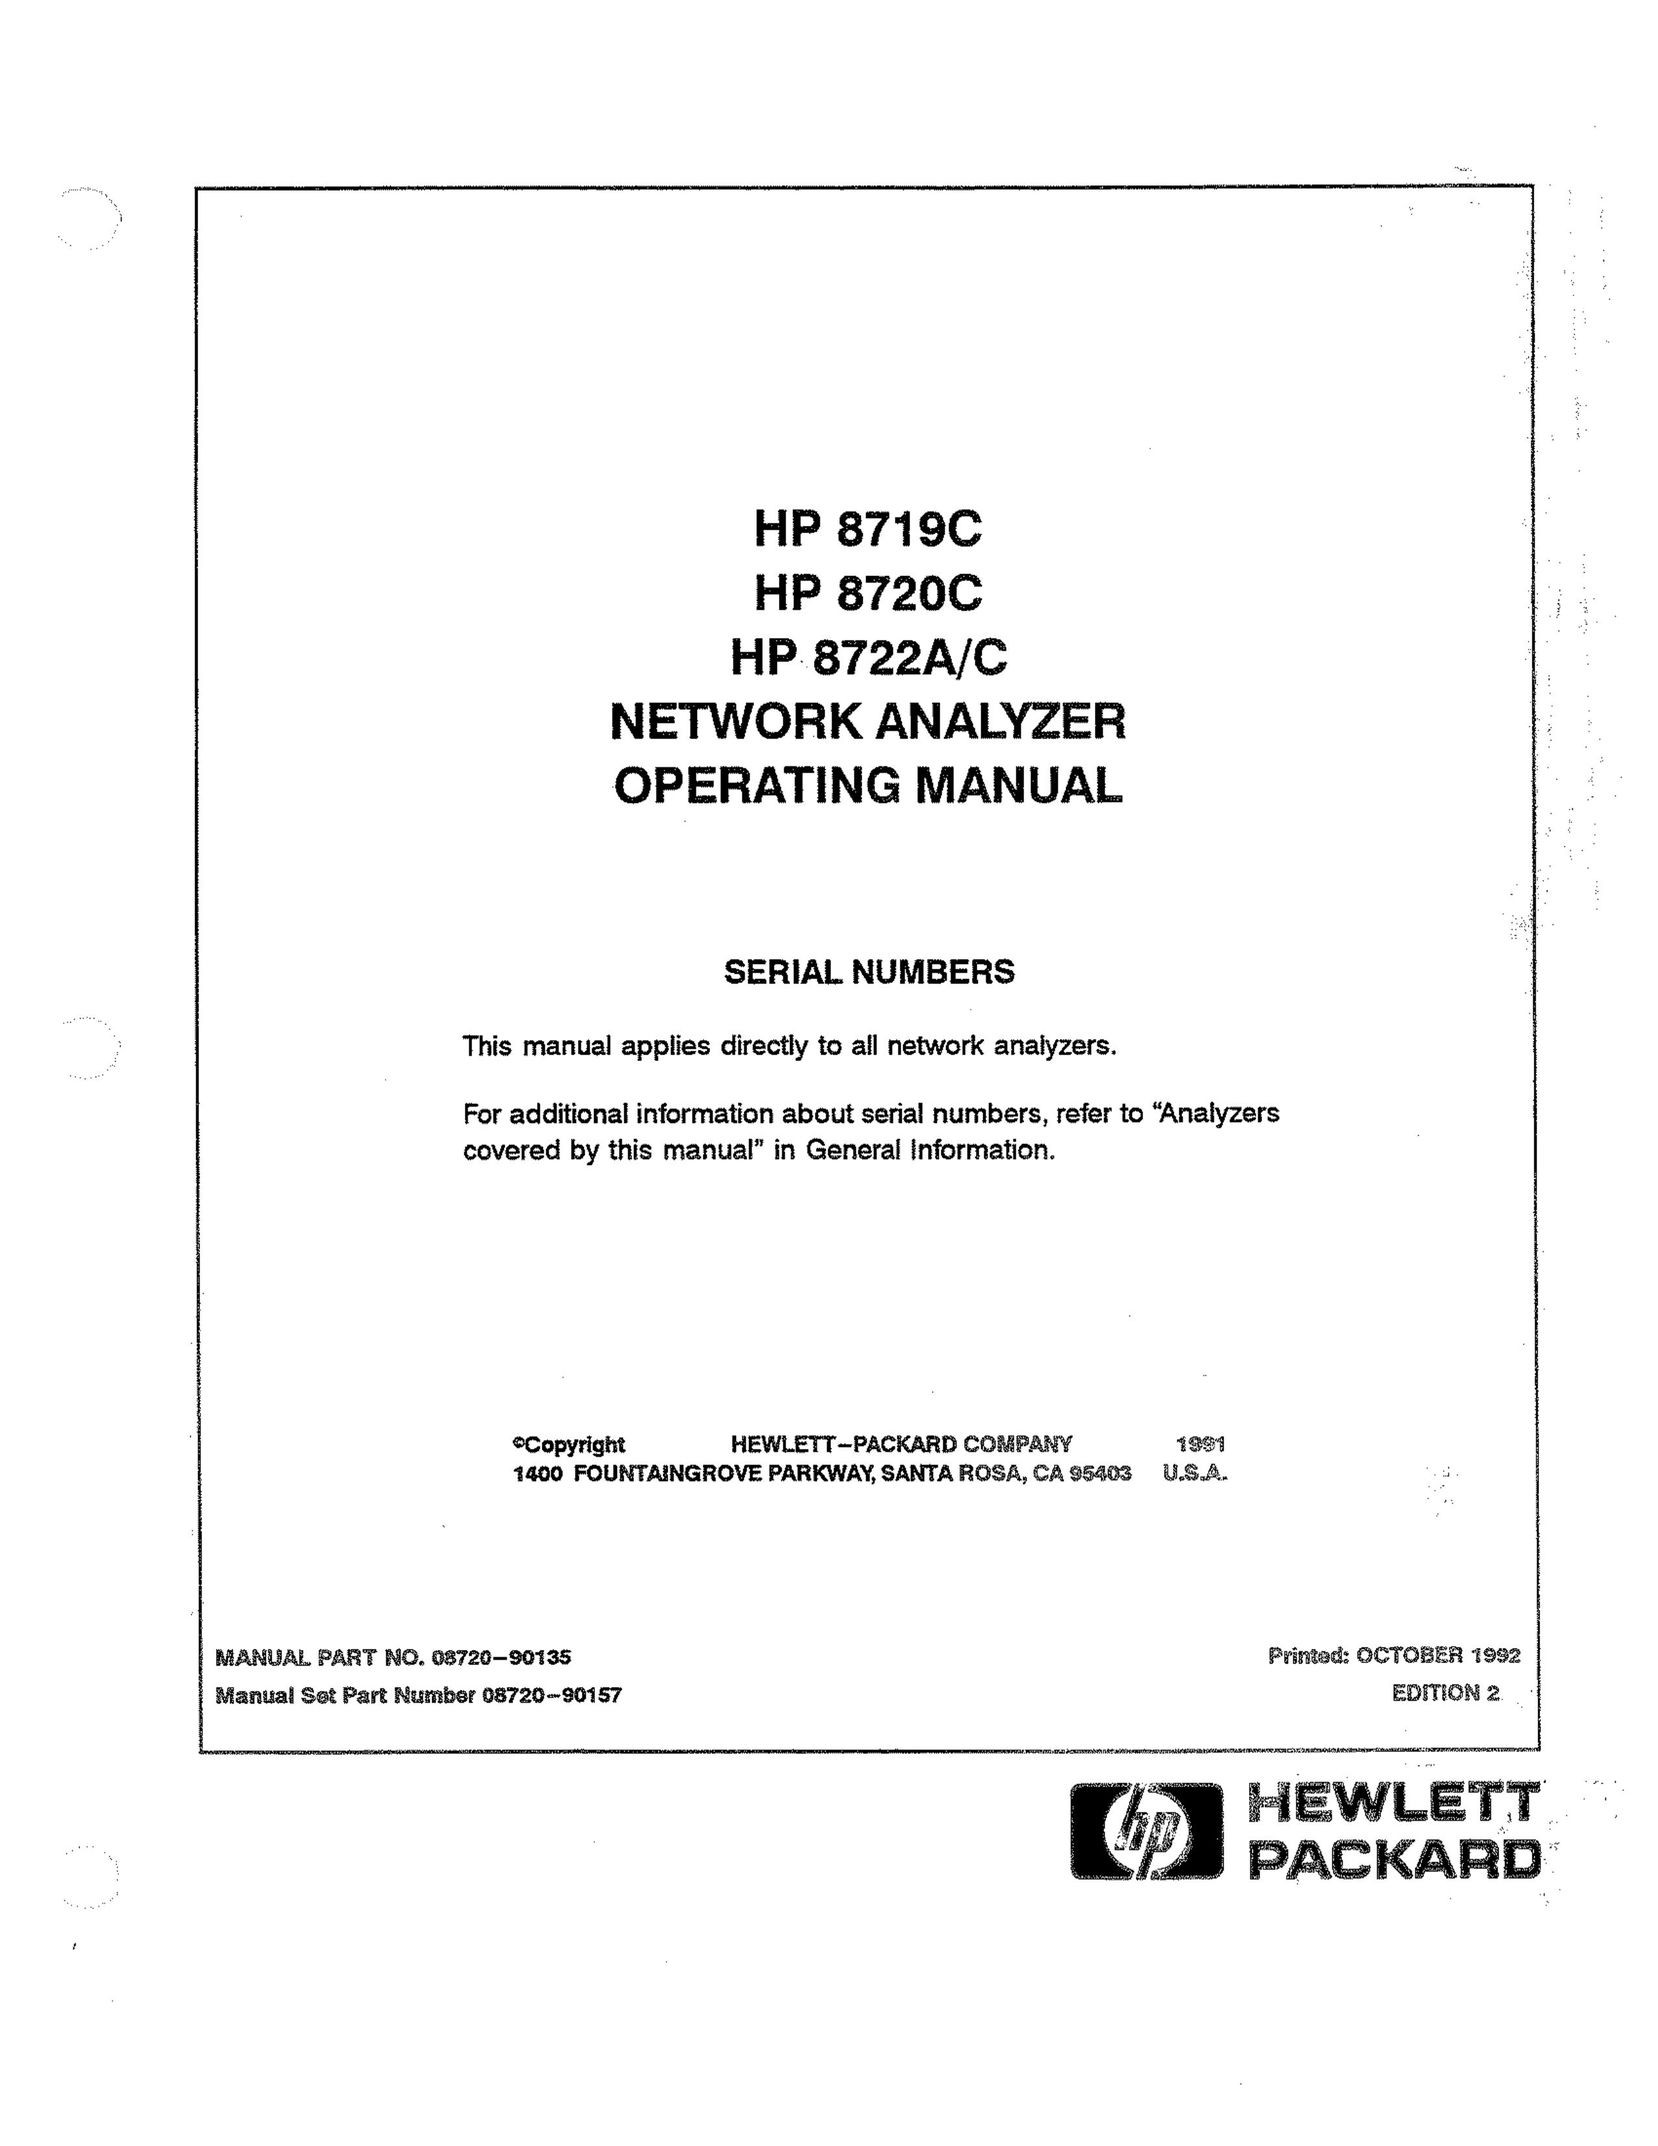 HP (Hewlett-Packard) C Network Router User Manual